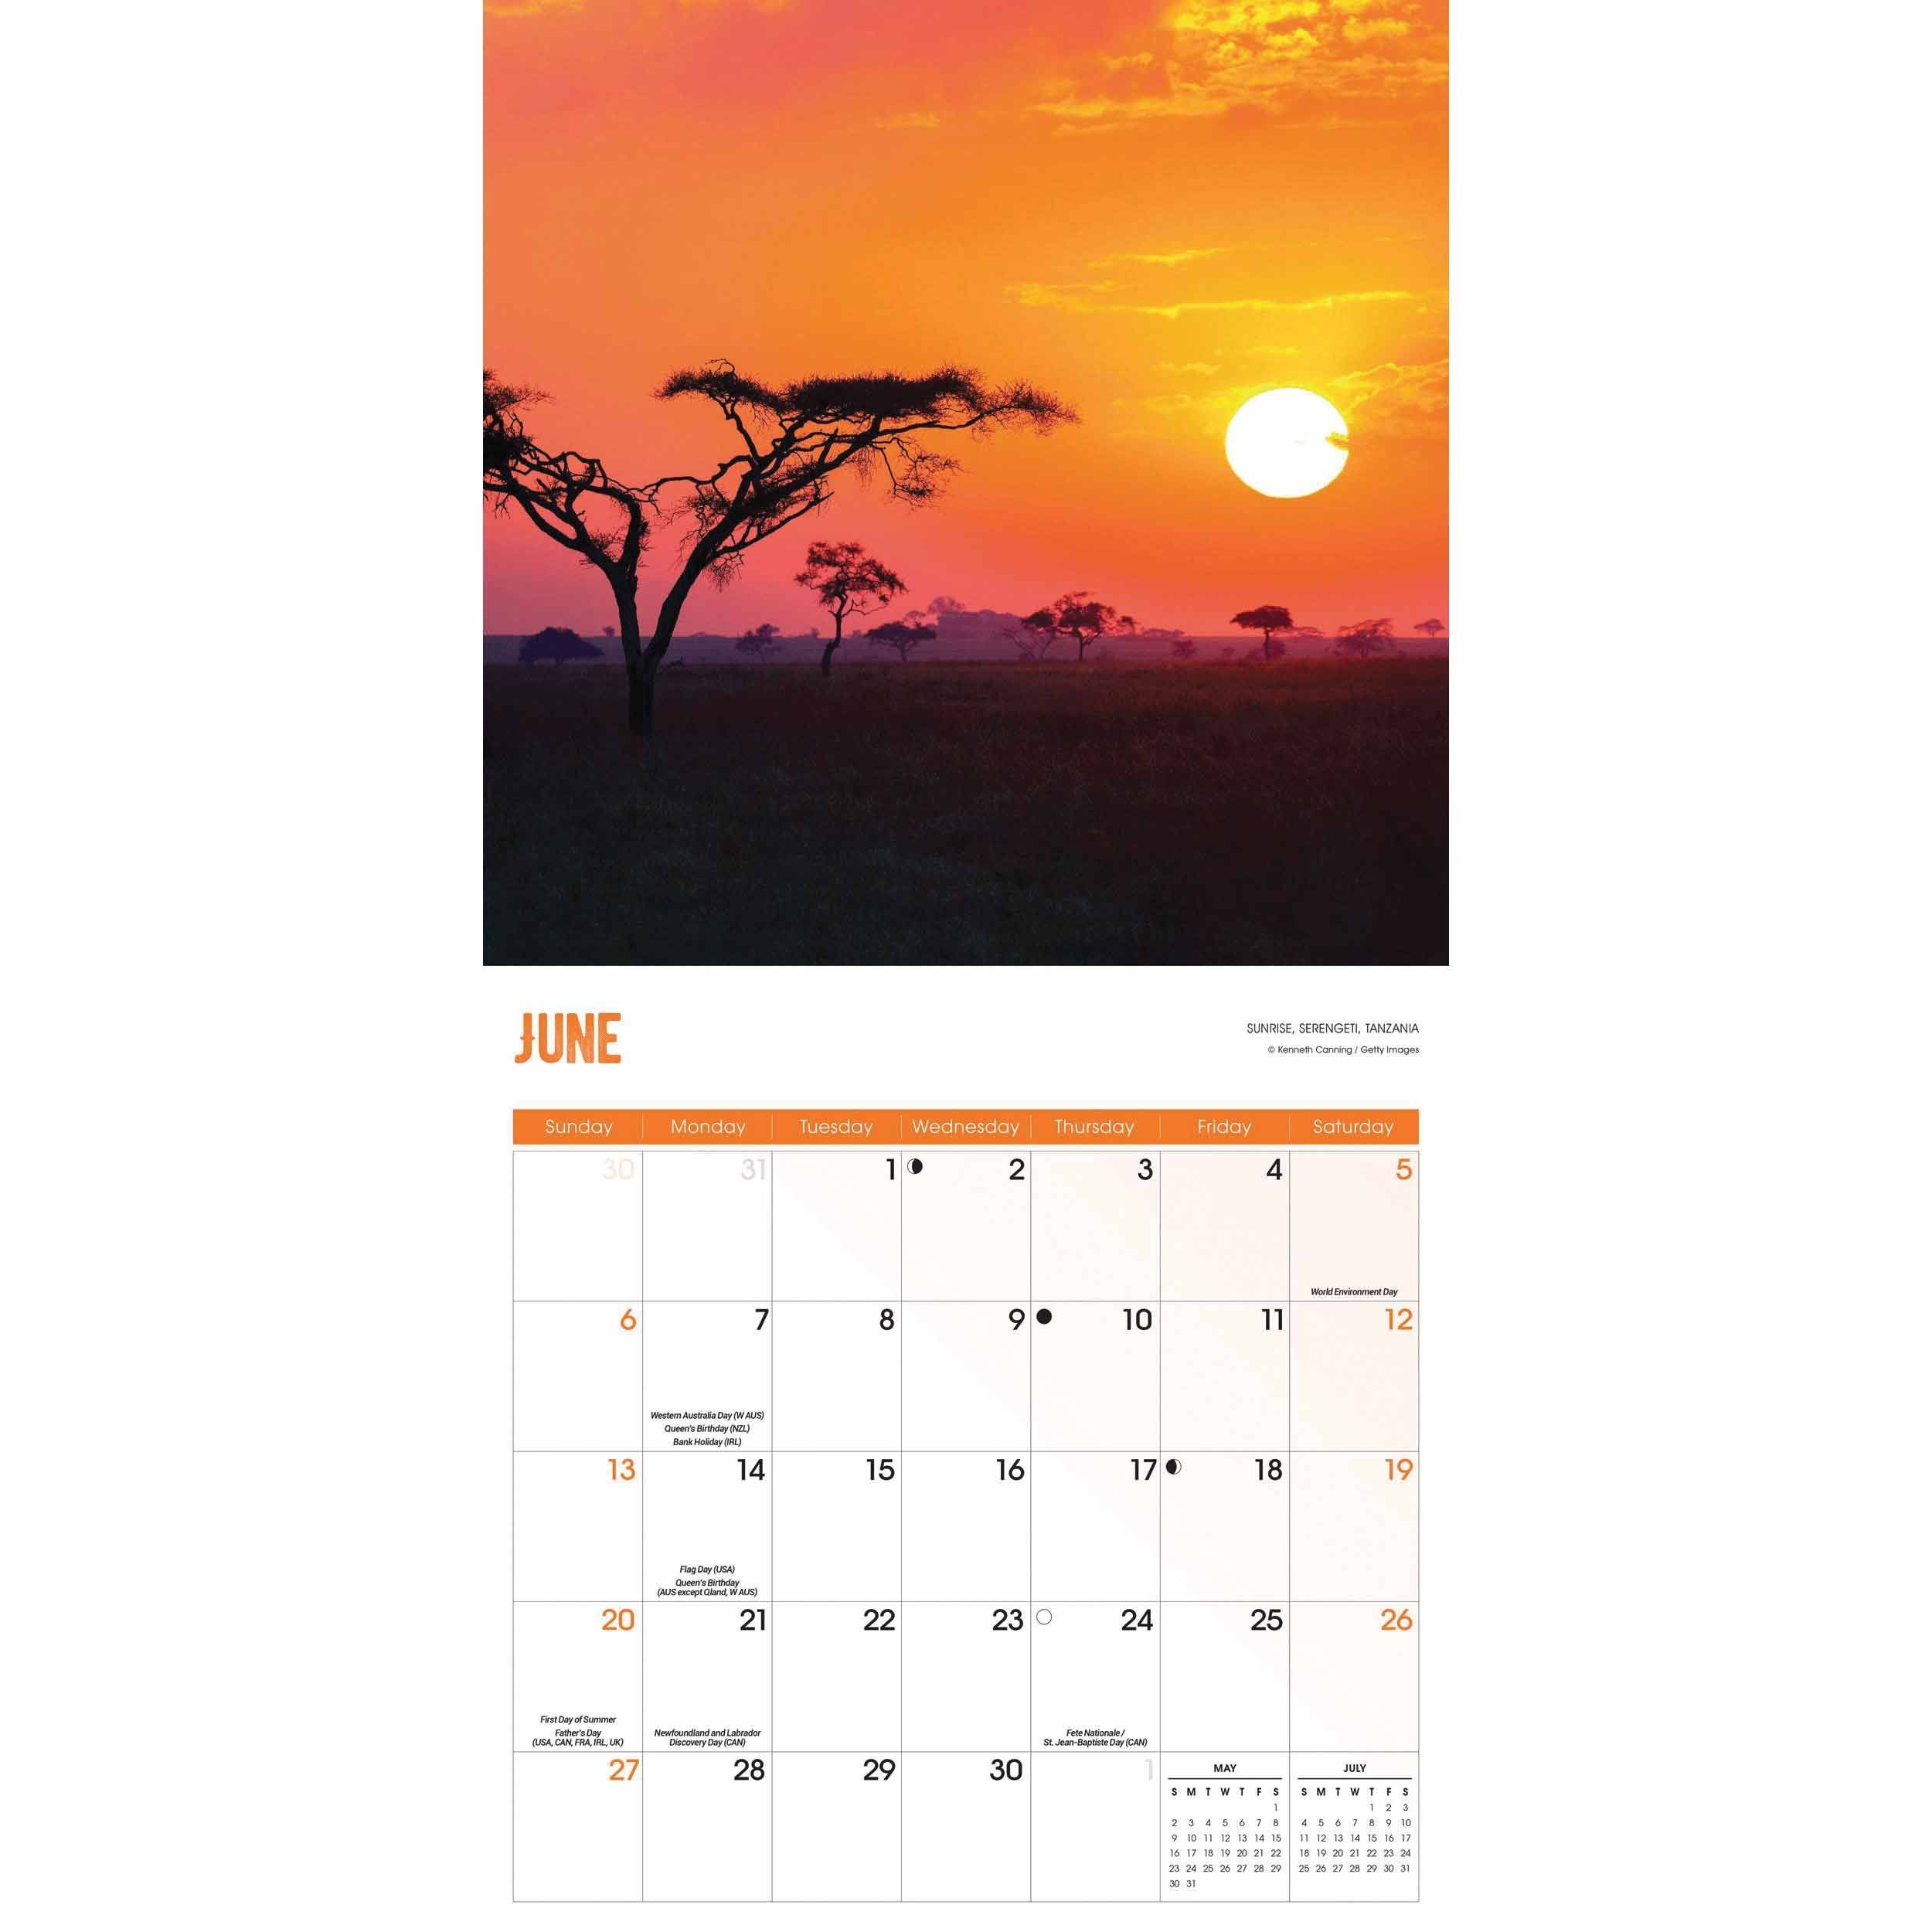 Sunrise Sunset Calendar 2021 At Calendar Club